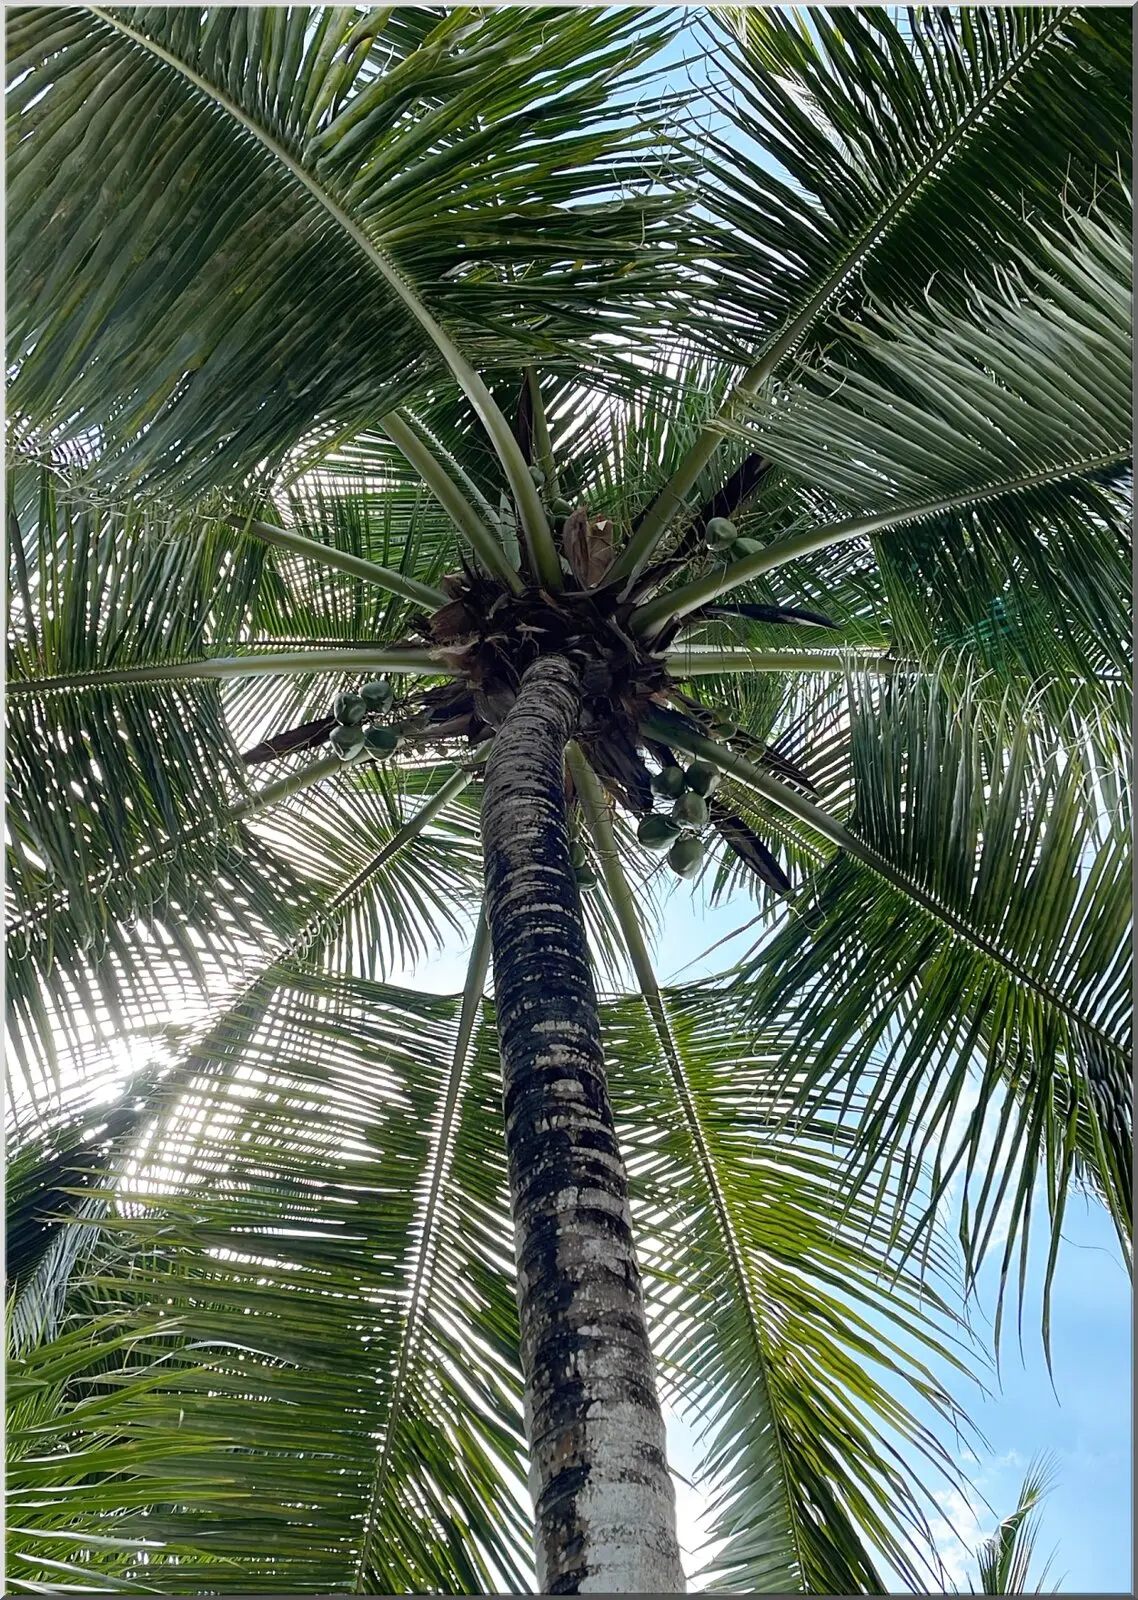 Postkarte mit aussergewöhnlichem Blick in eine Palme